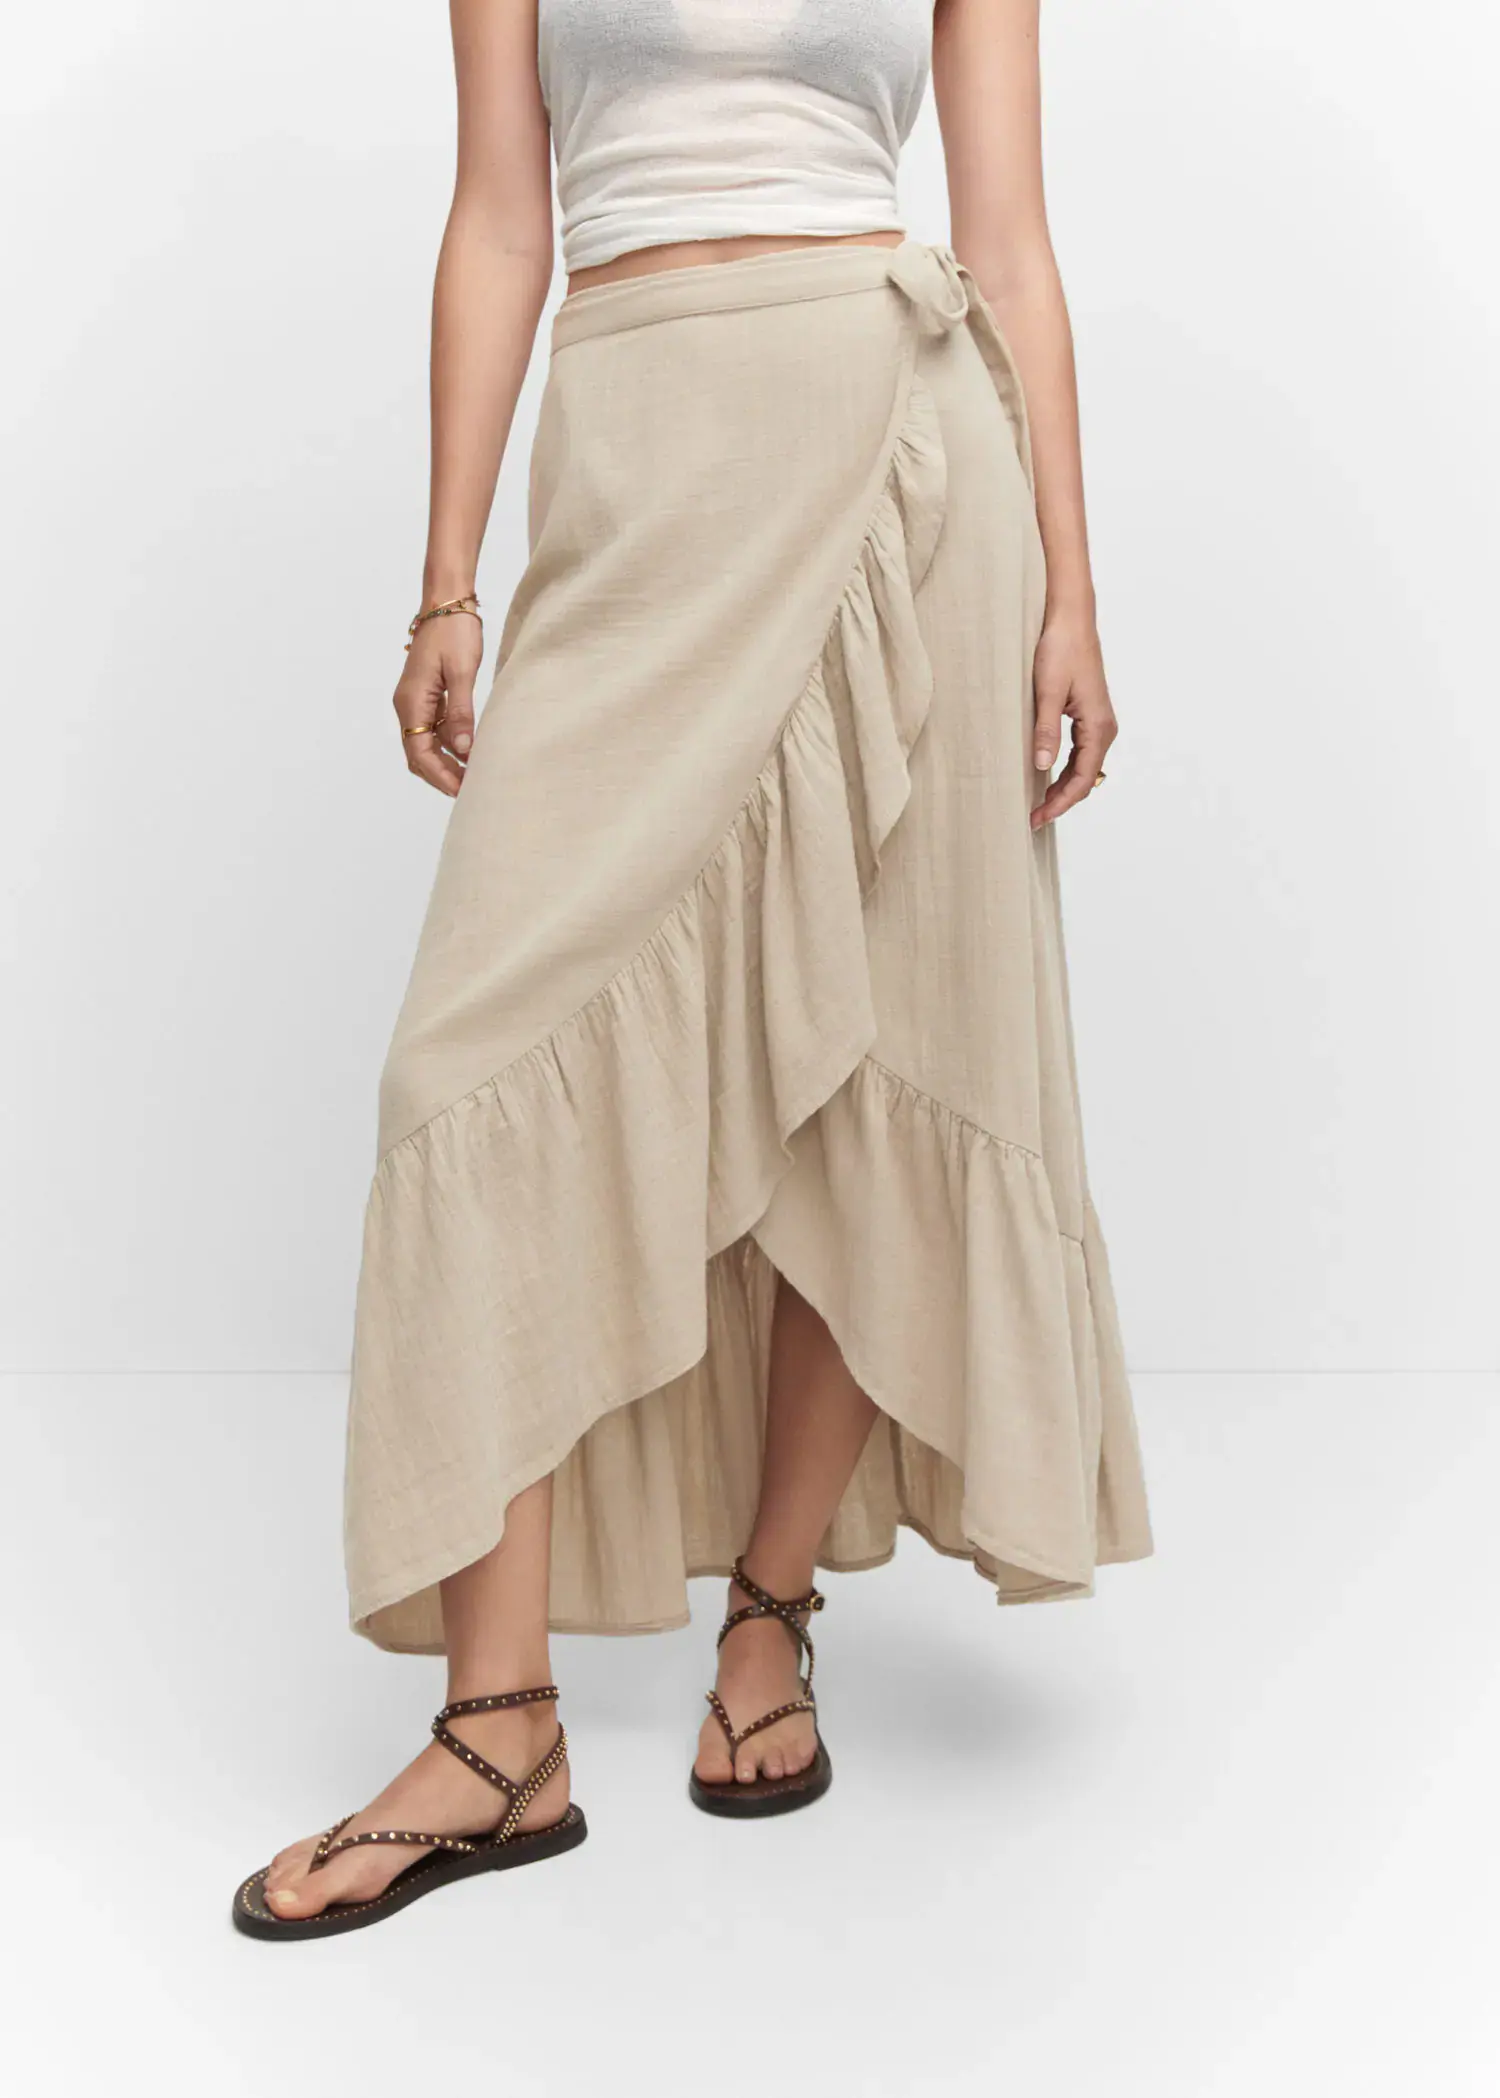 Mango Textured criss-cross skirt. a woman wearing a beige skirt and sandals. 